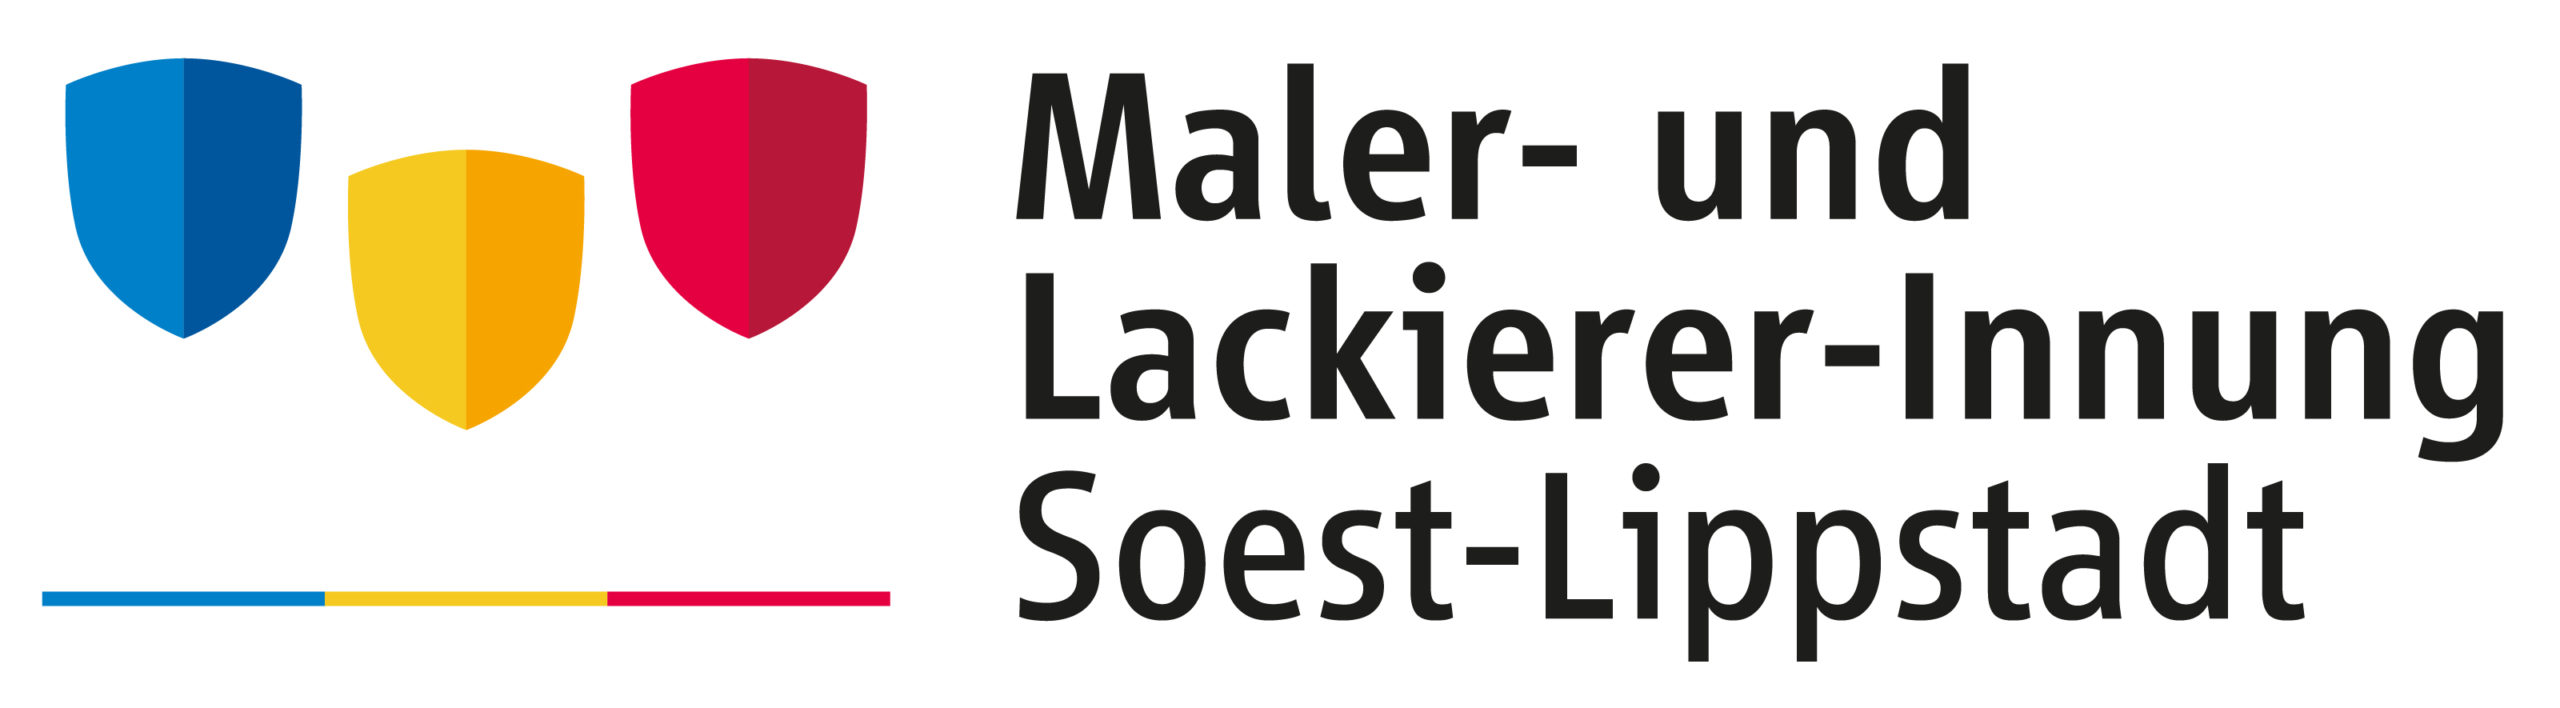 Logo Maler- und Lackierer-Innung Soest-Lippstadt